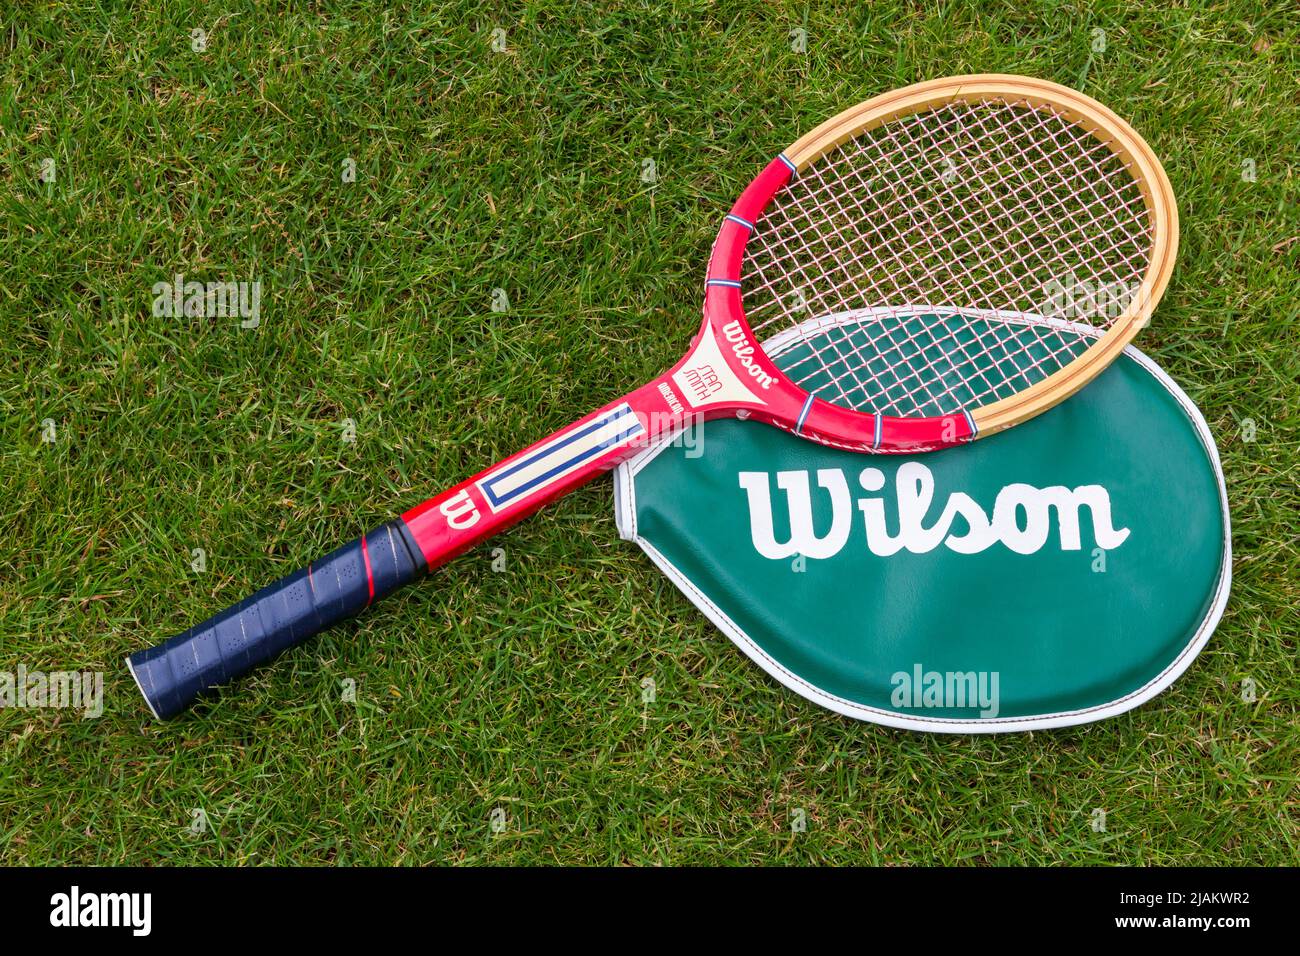 Racket da tennis Wilson, racket da tennis Wilson, sul prato in erba Foto Stock